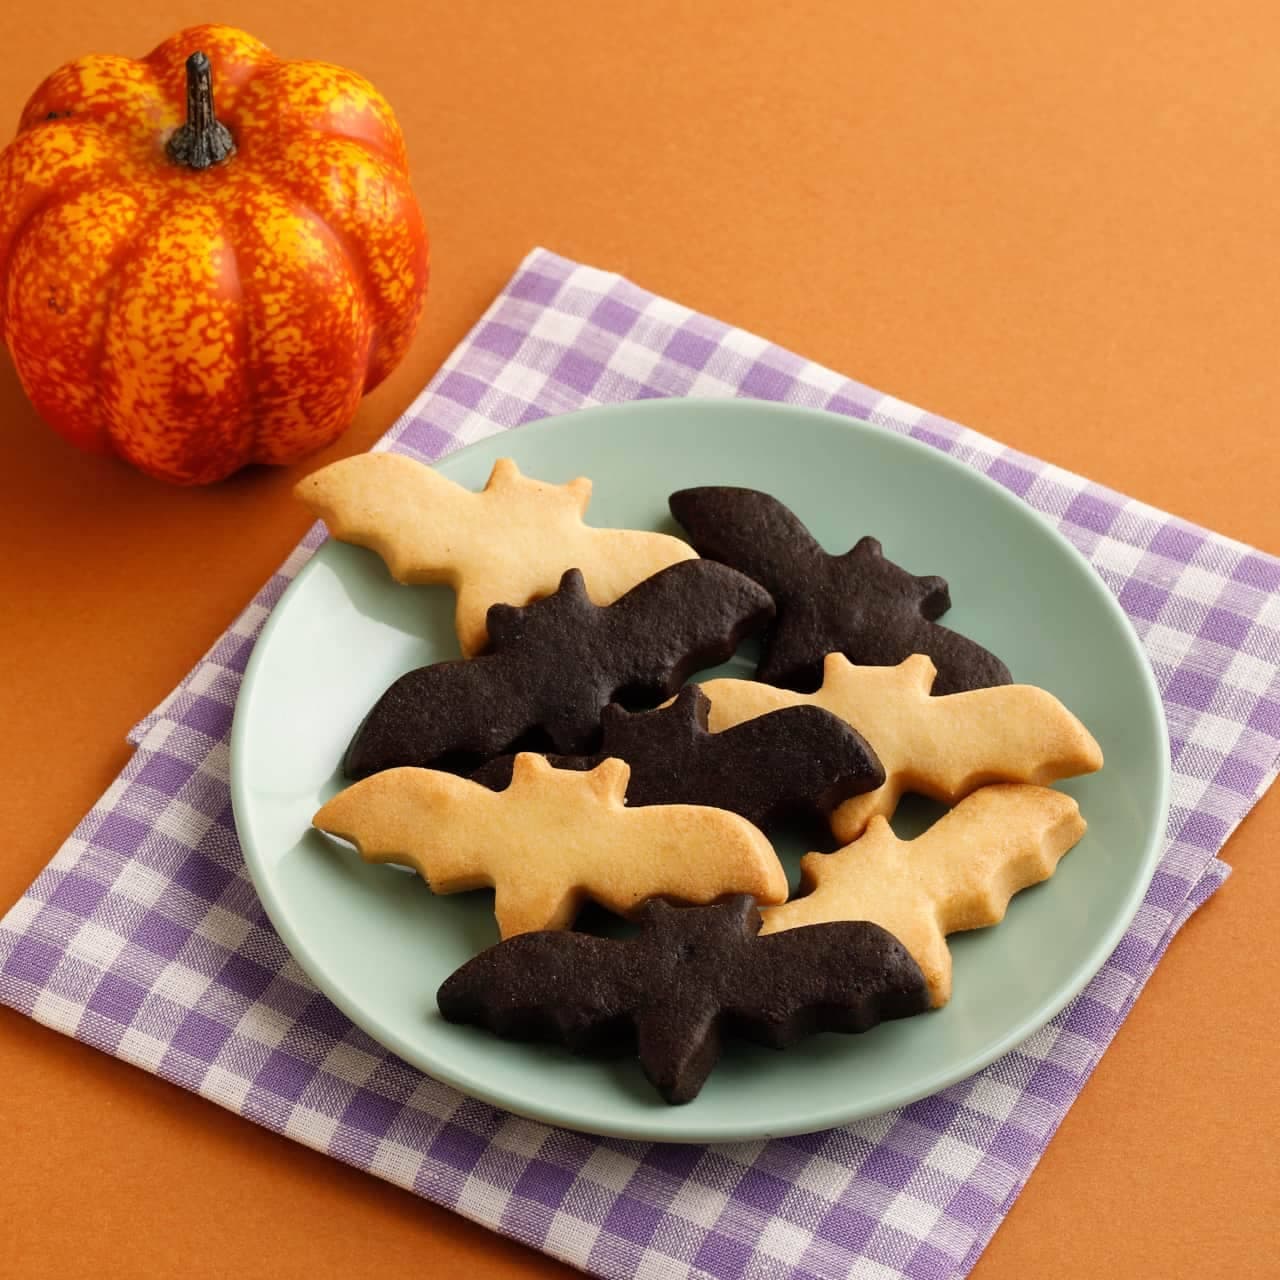 KINOKUNIYA "Halloween Sweets